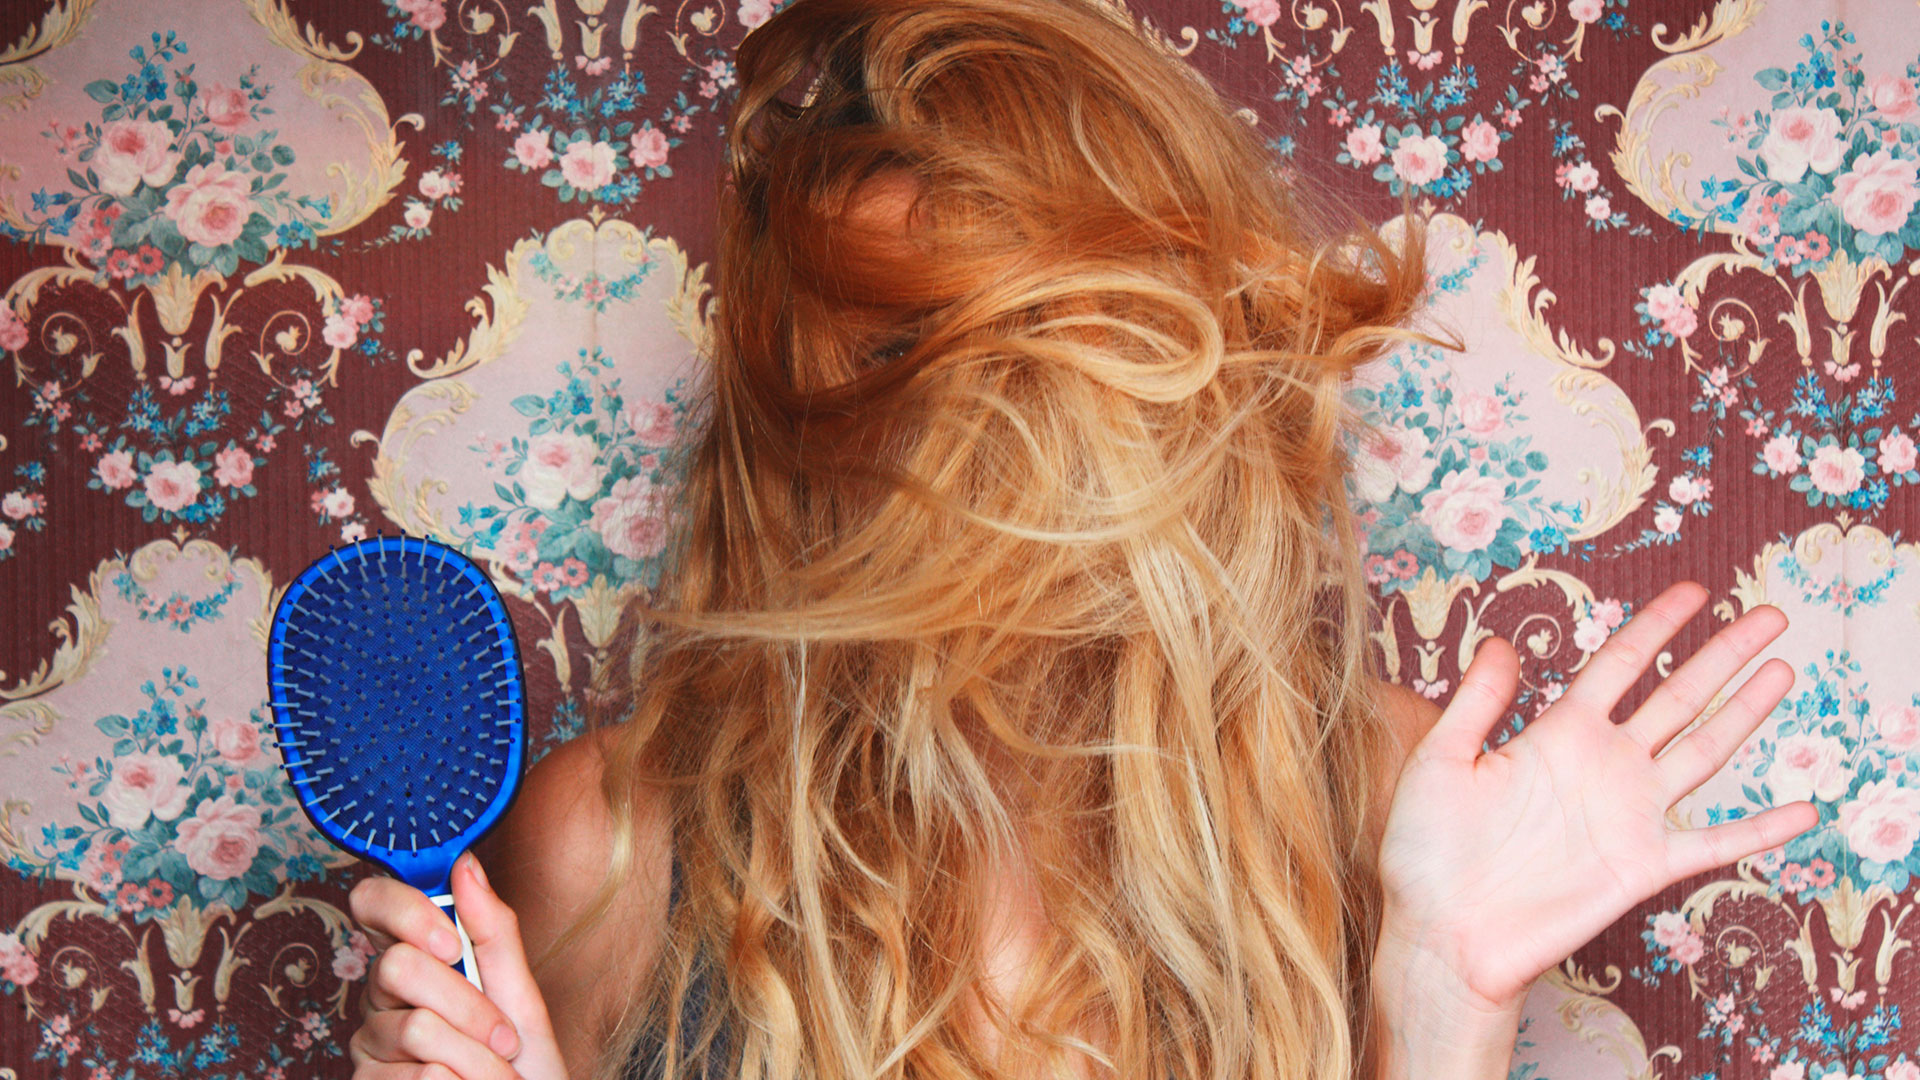 Los mejores tips por expertos para probar nuevos peinados en cuarentena (Shutterstock)